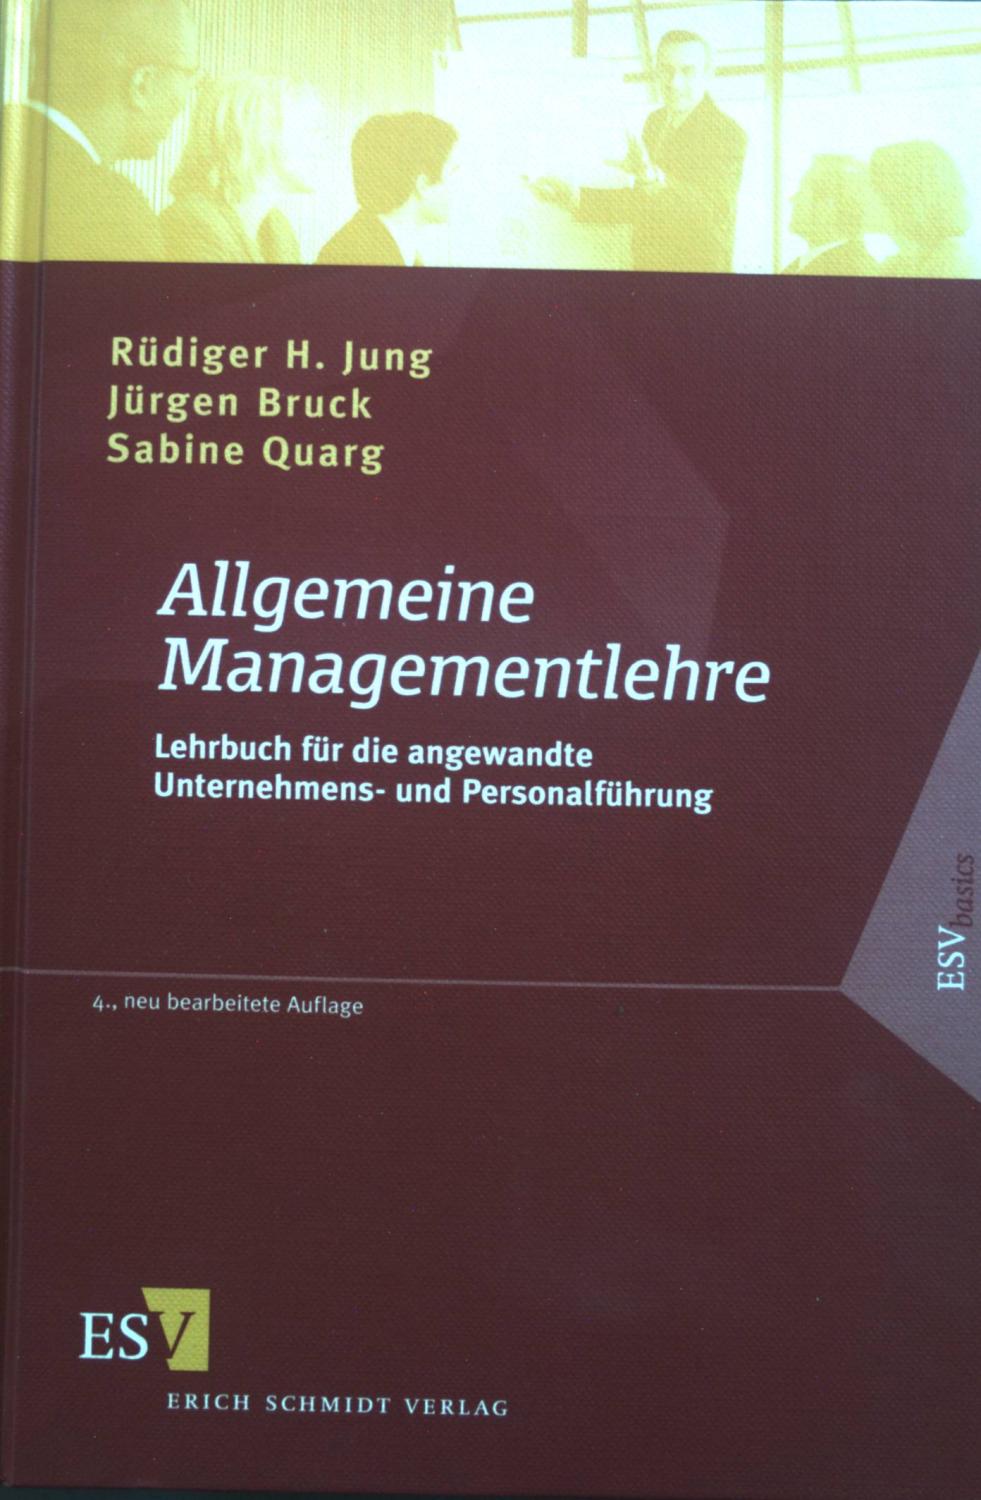 Allgemeine Managementlehre : Lehrbuch für die angewandte Unternehmens- und Personalführung. ESV basics - Jung, Rüdiger H., Jürgen Bruck und Sabine Quarg